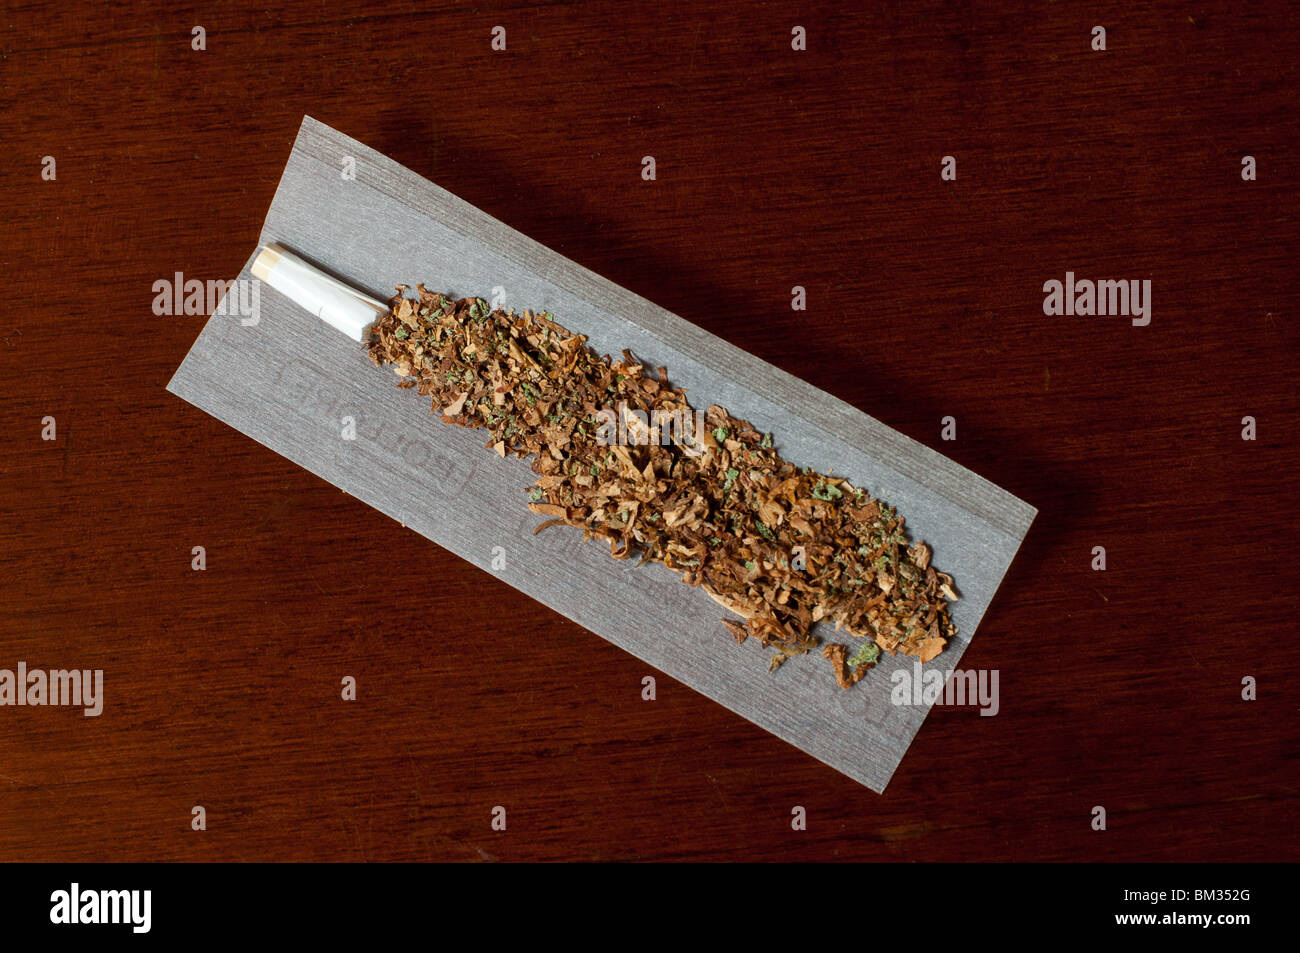 Un joint de cannabis et de mauvaises herbes (tabac) sur un papier à rouler sur une table en bois. Banque D'Images